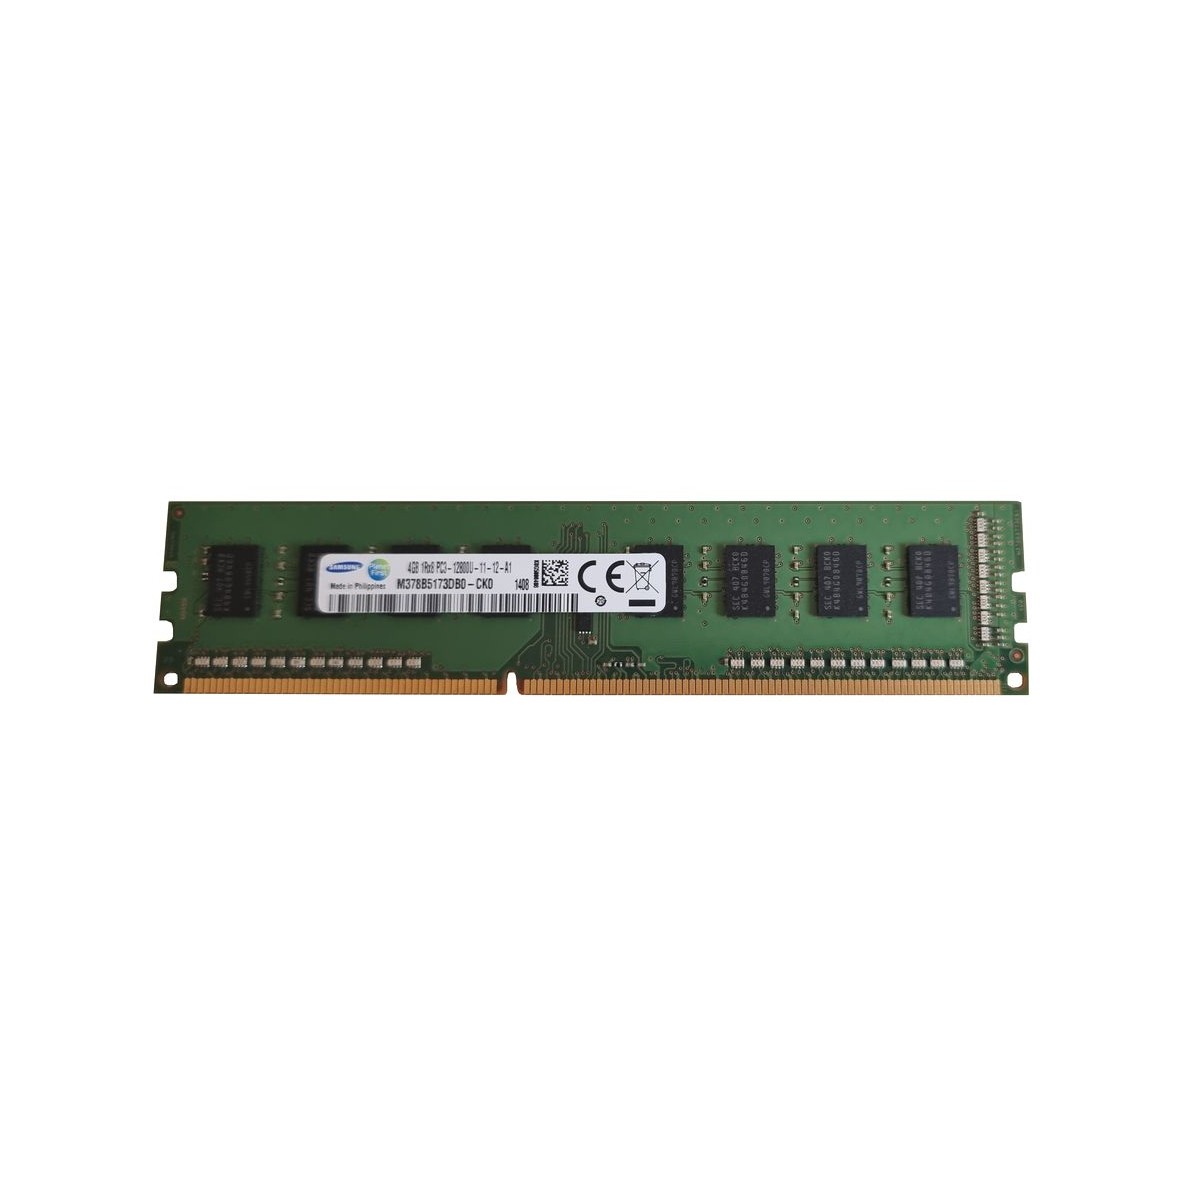 SAMSUNG 4GB PC3-12800U 1600Mhz M378B5173DB0-CK0